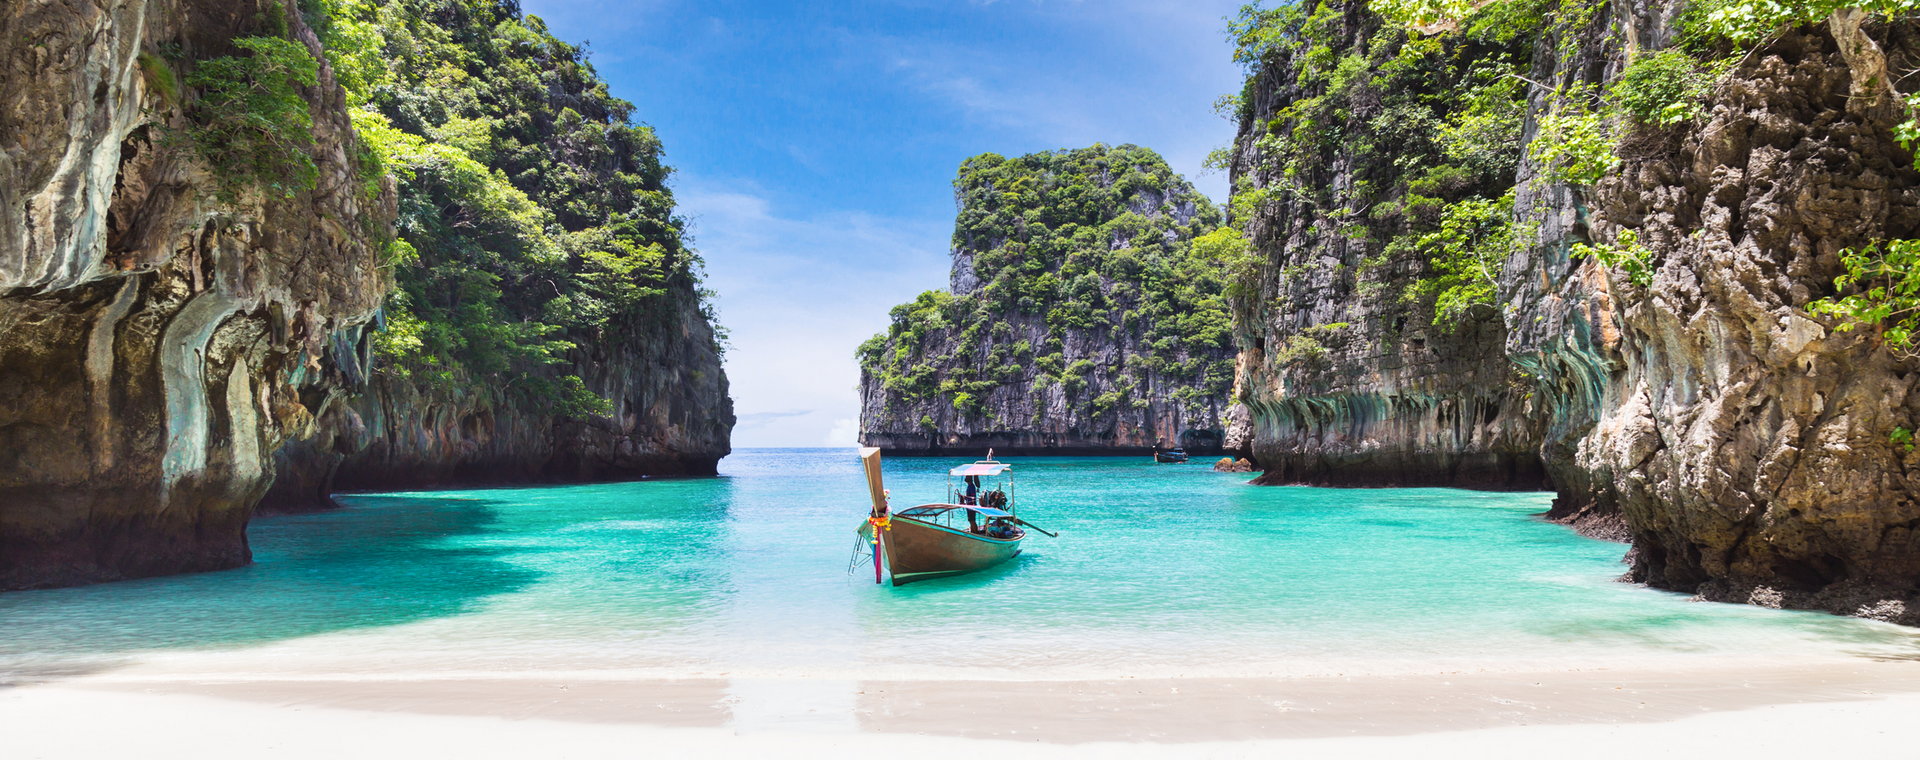 Szukasz miejsca na wakacje życia? W tym artkule znajdziesz świetnie oceniane obiekty na wypoczynek w Tajlandii - wszystkie znajdują się w pobliżu plaż. Na zdjęciu jeden z urokliwych zakątków w prowincji Phuket.